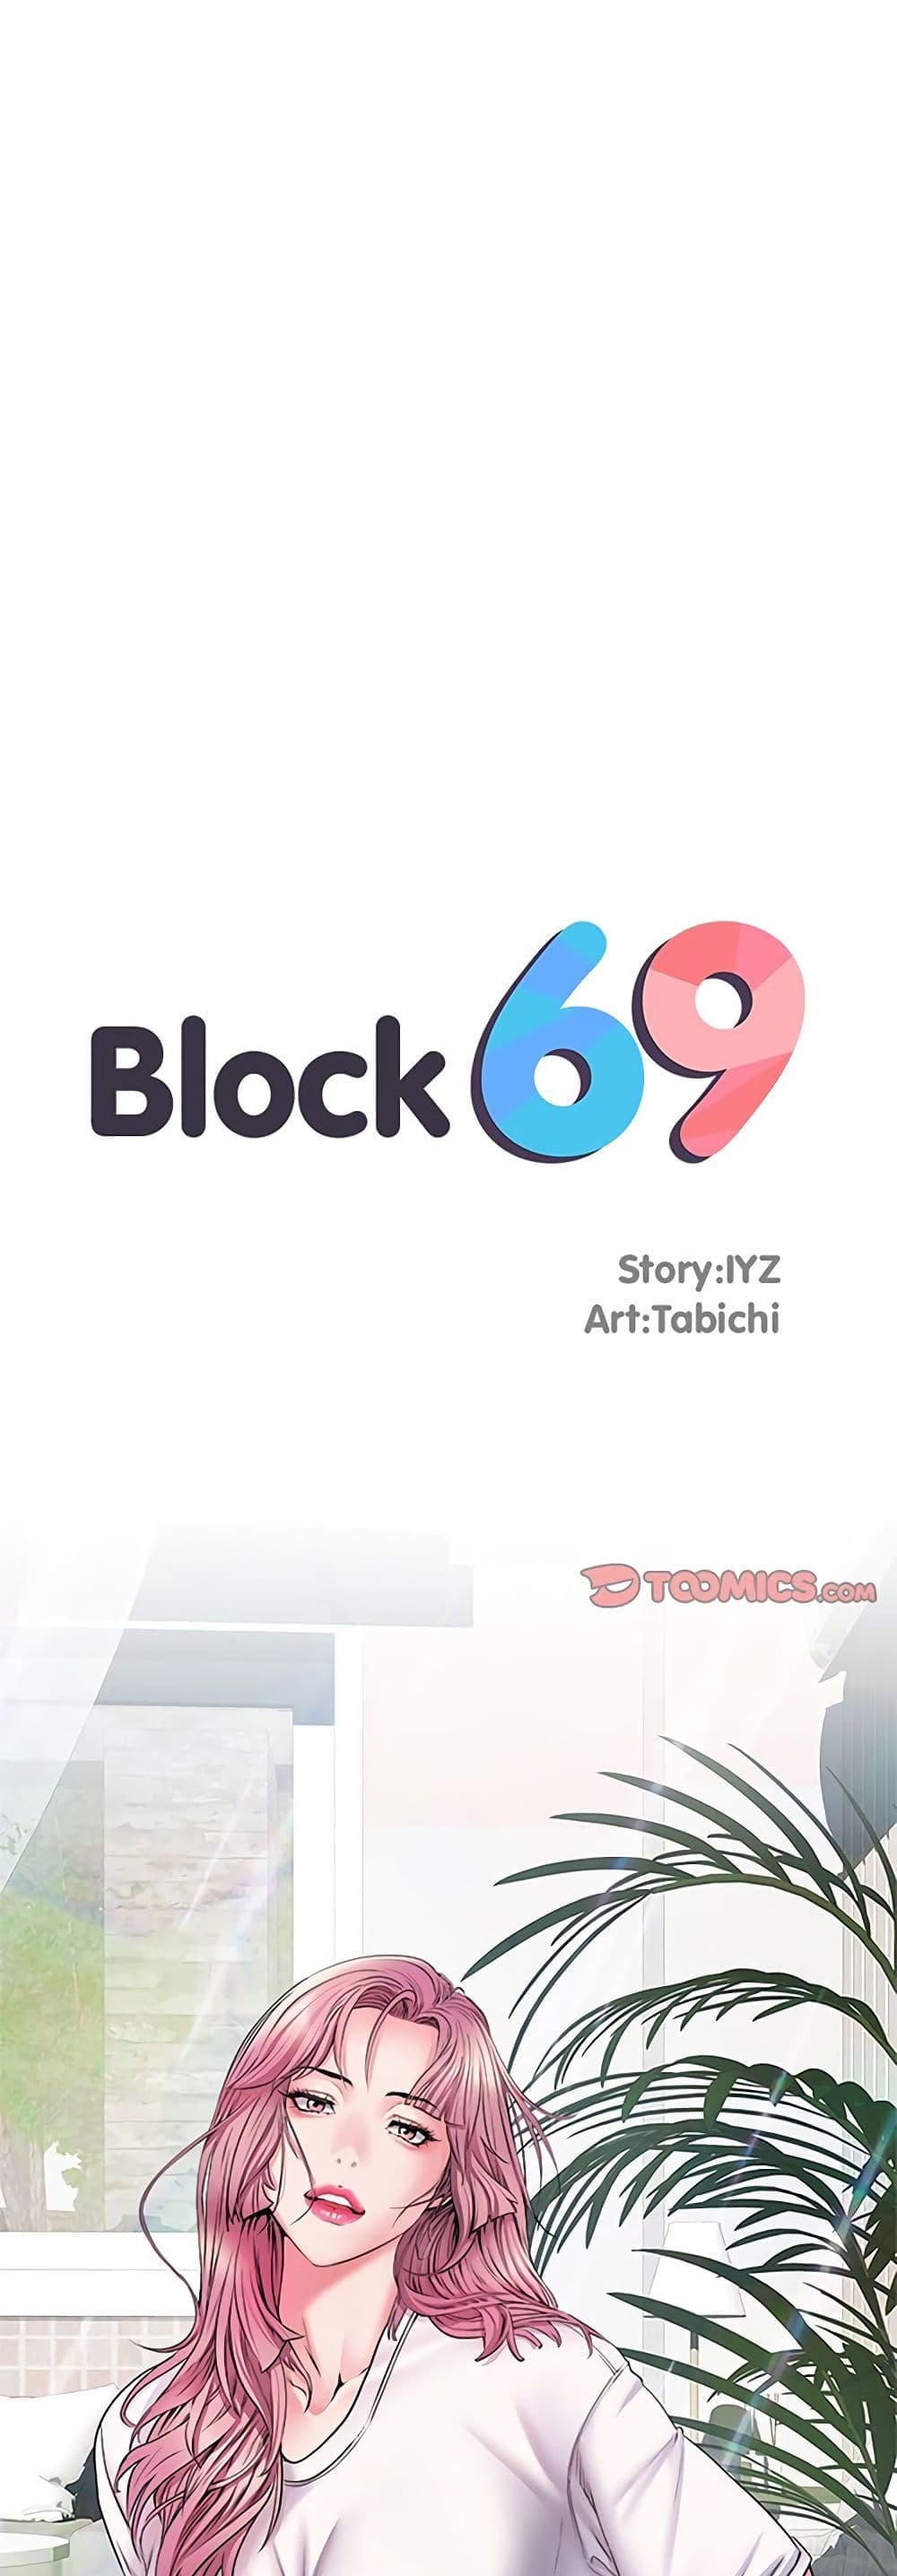 Block 69 8 ภาพที่ 2